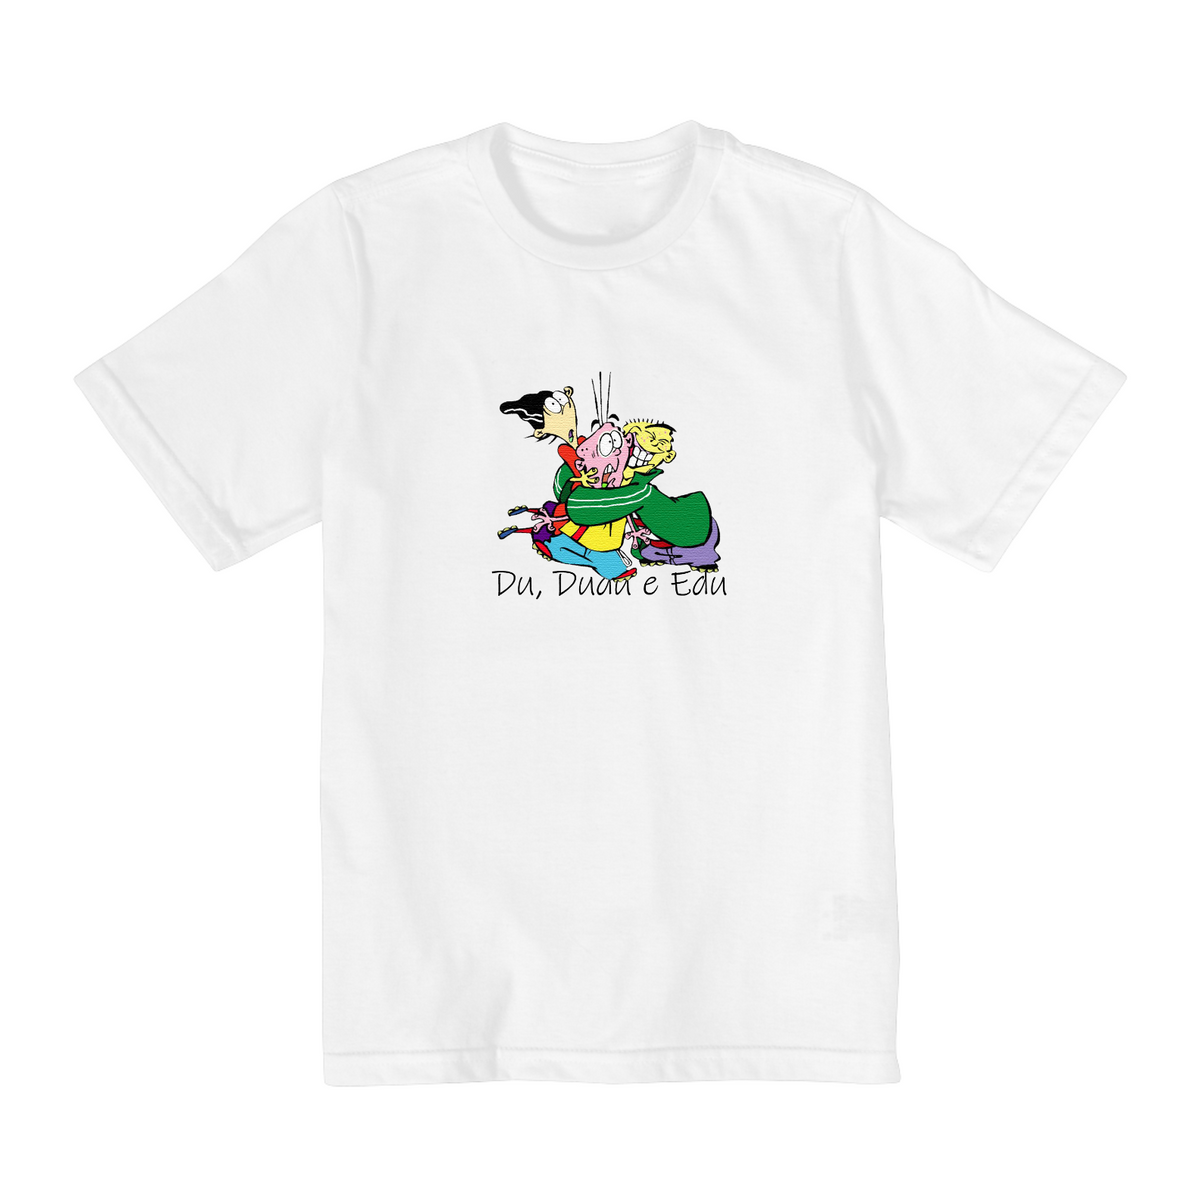 Nome do produto: Camiseta Infantil (2 a 8) Du, Dudu e Edu 1